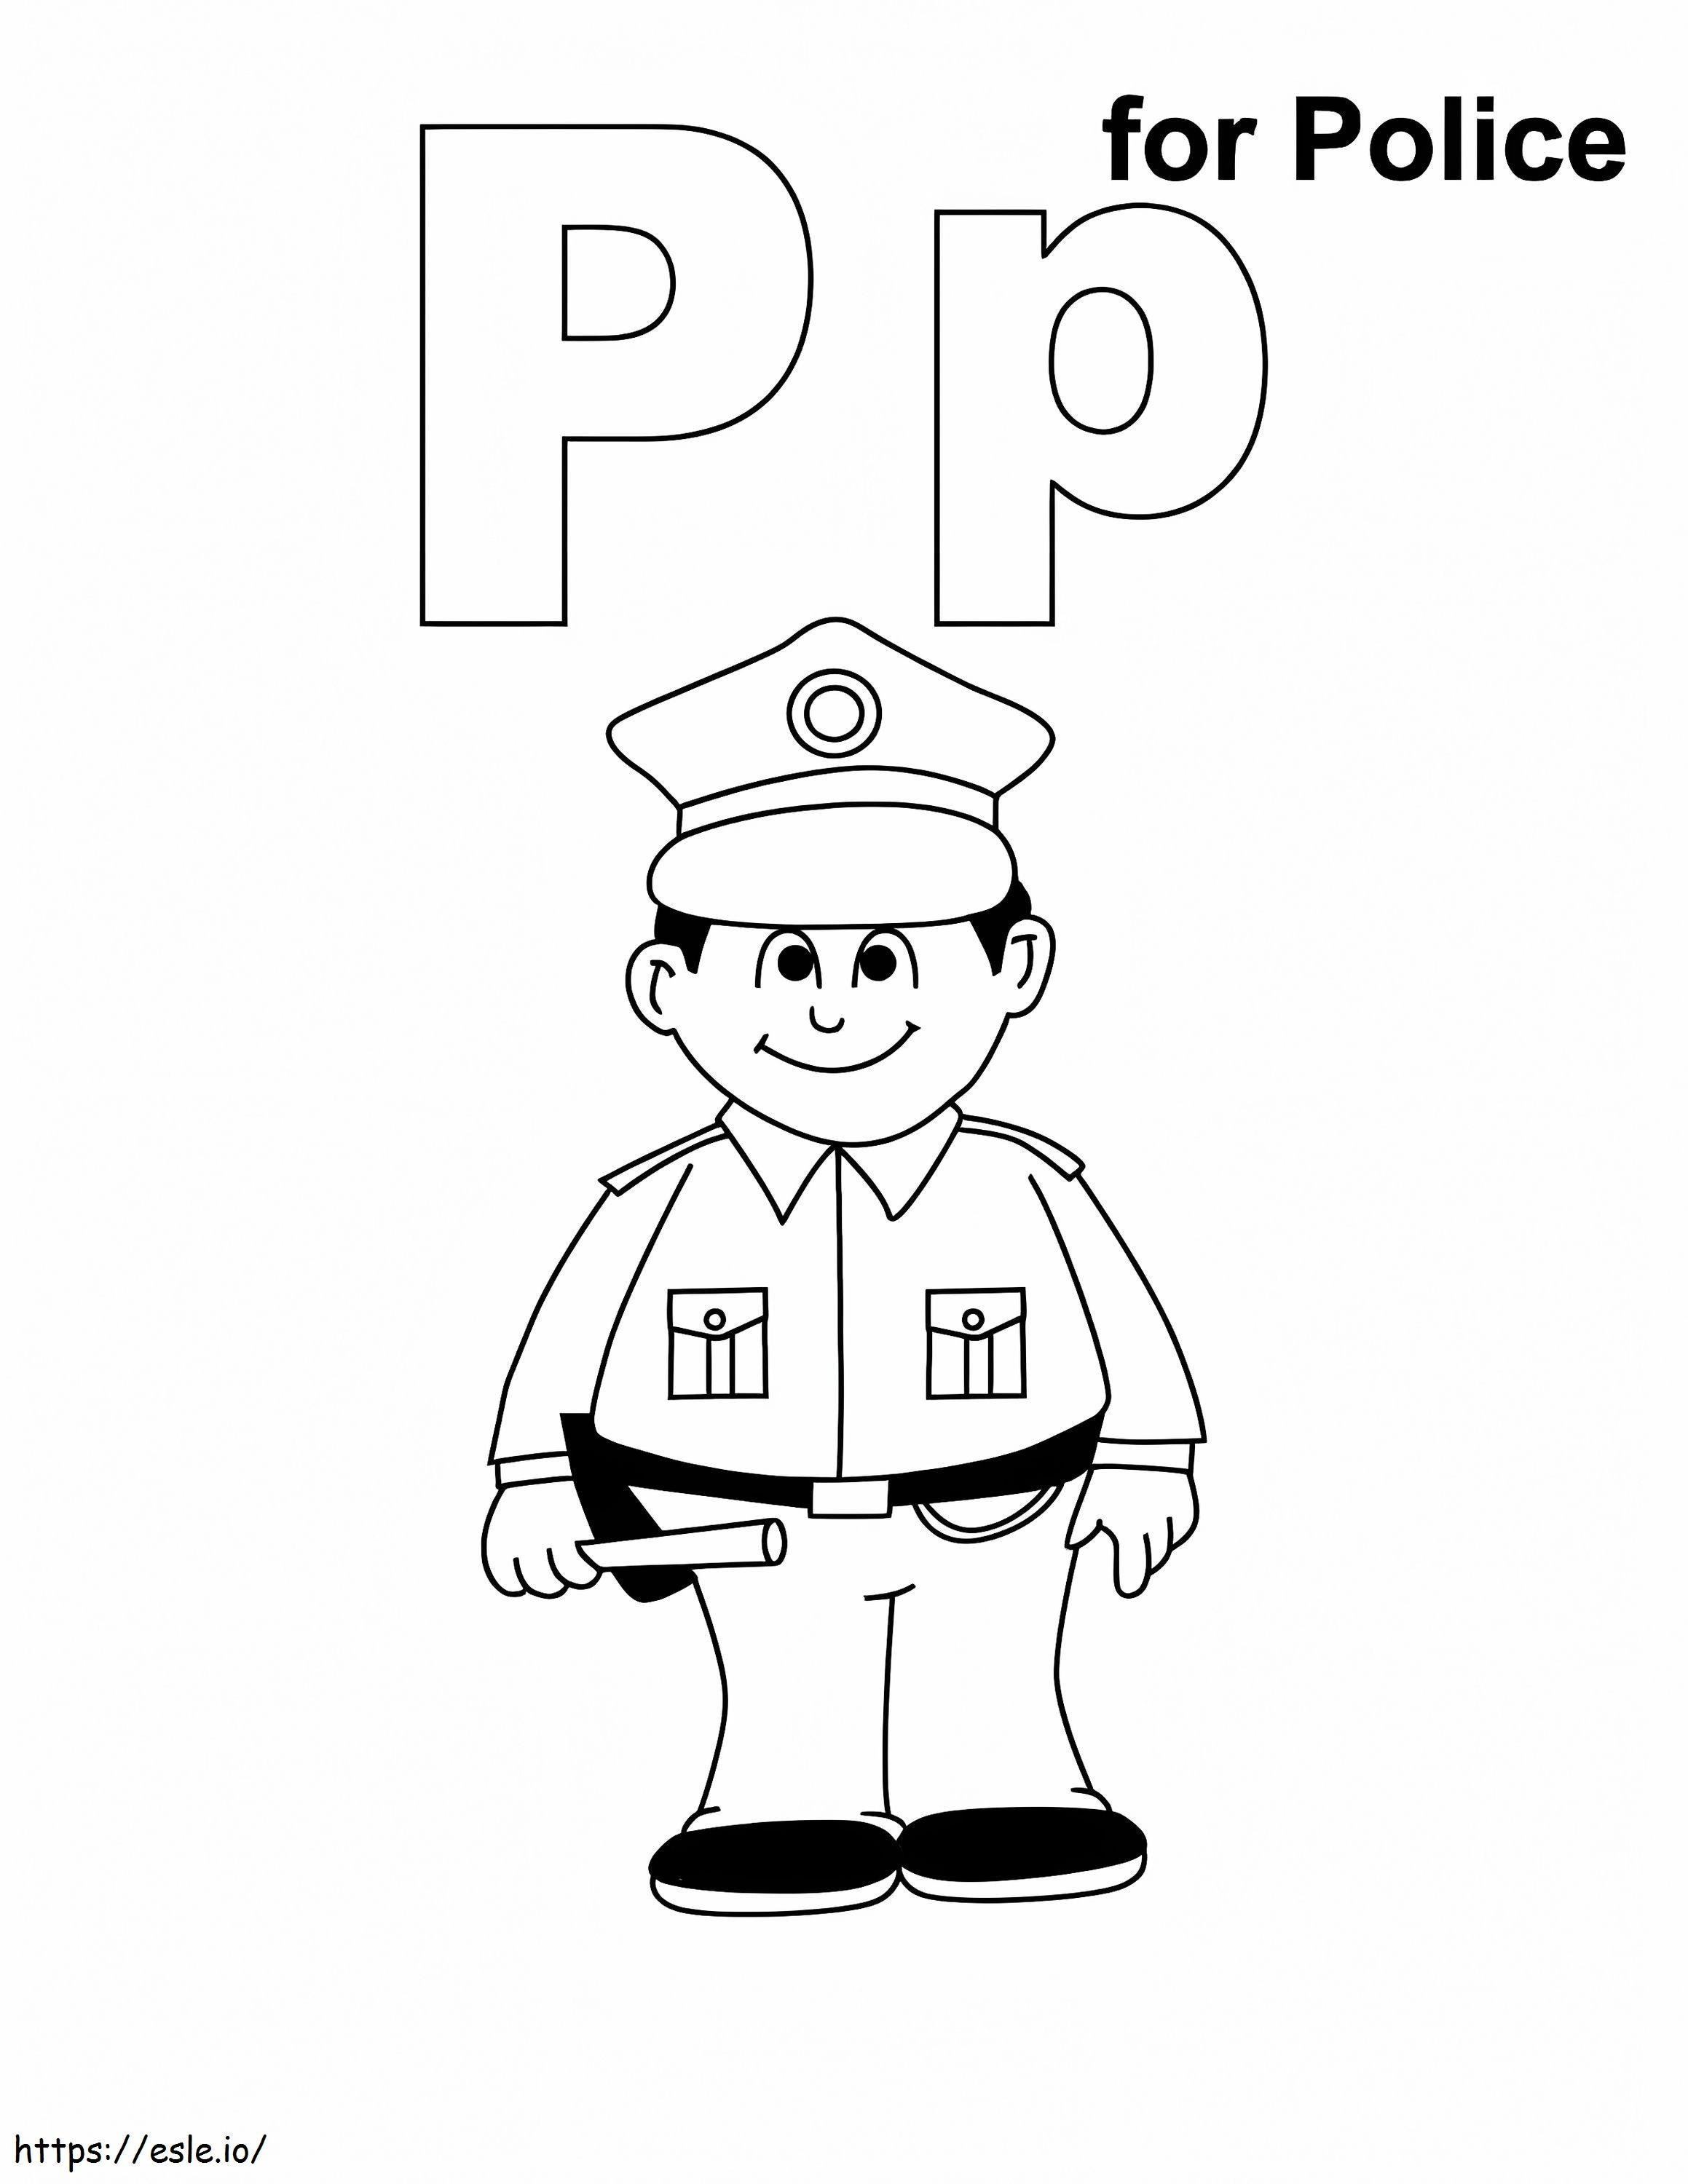 Letra P Para Polícia para colorir